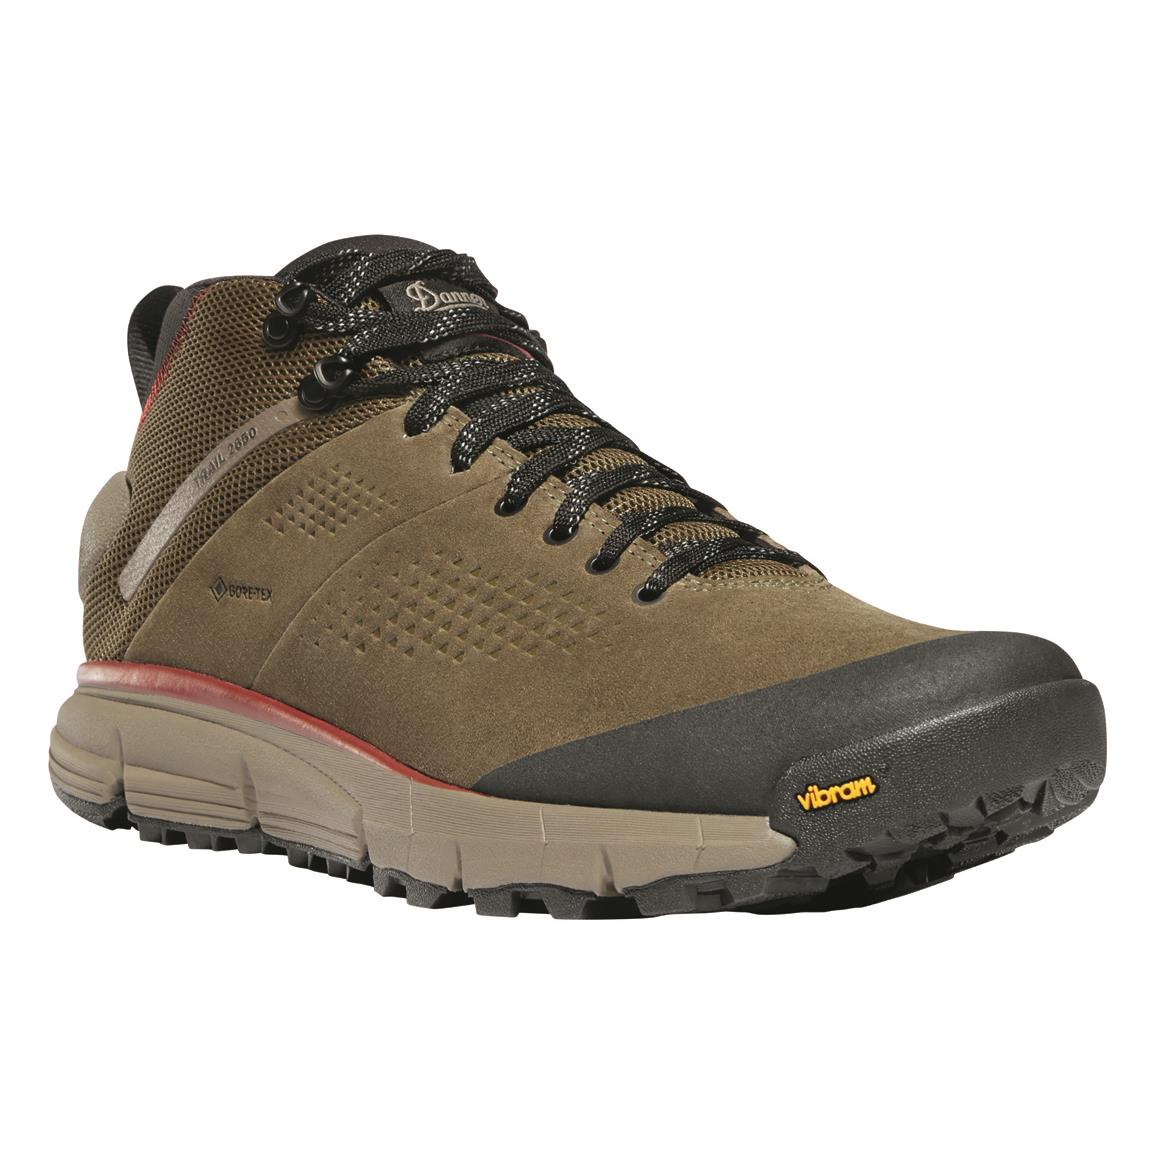 Danner Men's Trail 2650 GTX Waterproof Hiking Boots, Dusty Olive